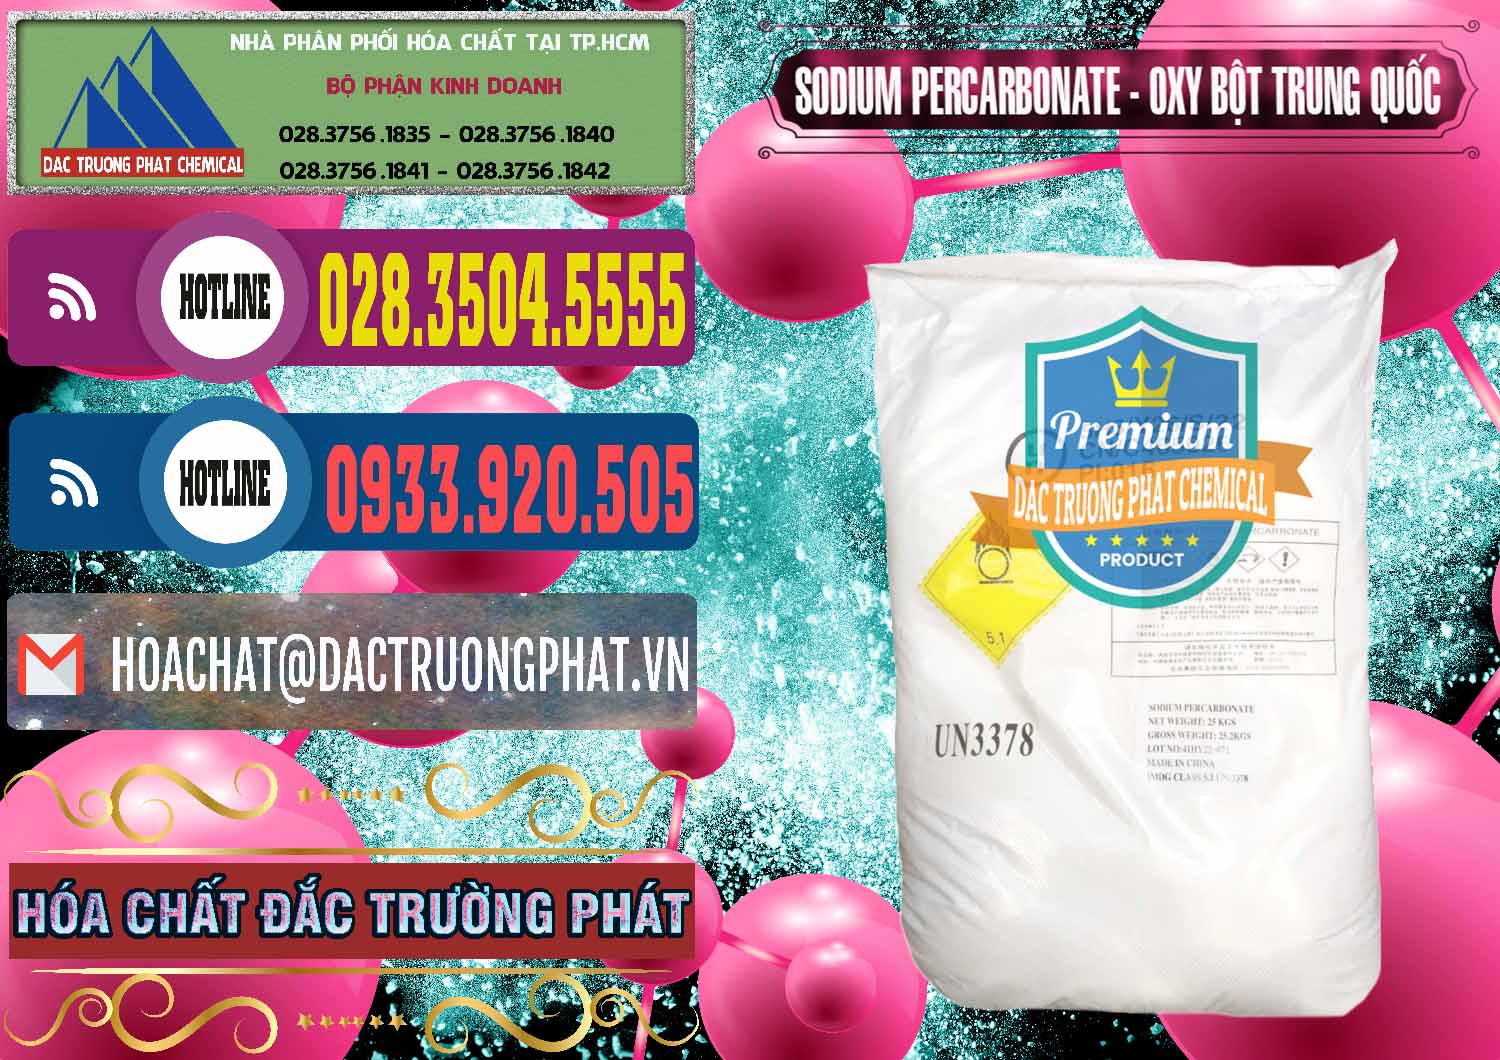 Đơn vị chuyên cung cấp và bán Sodium Percarbonate Dạng Bột Trung Quốc China - 0390 - Cty nhập khẩu - phân phối hóa chất tại TP.HCM - muabanhoachat.com.vn